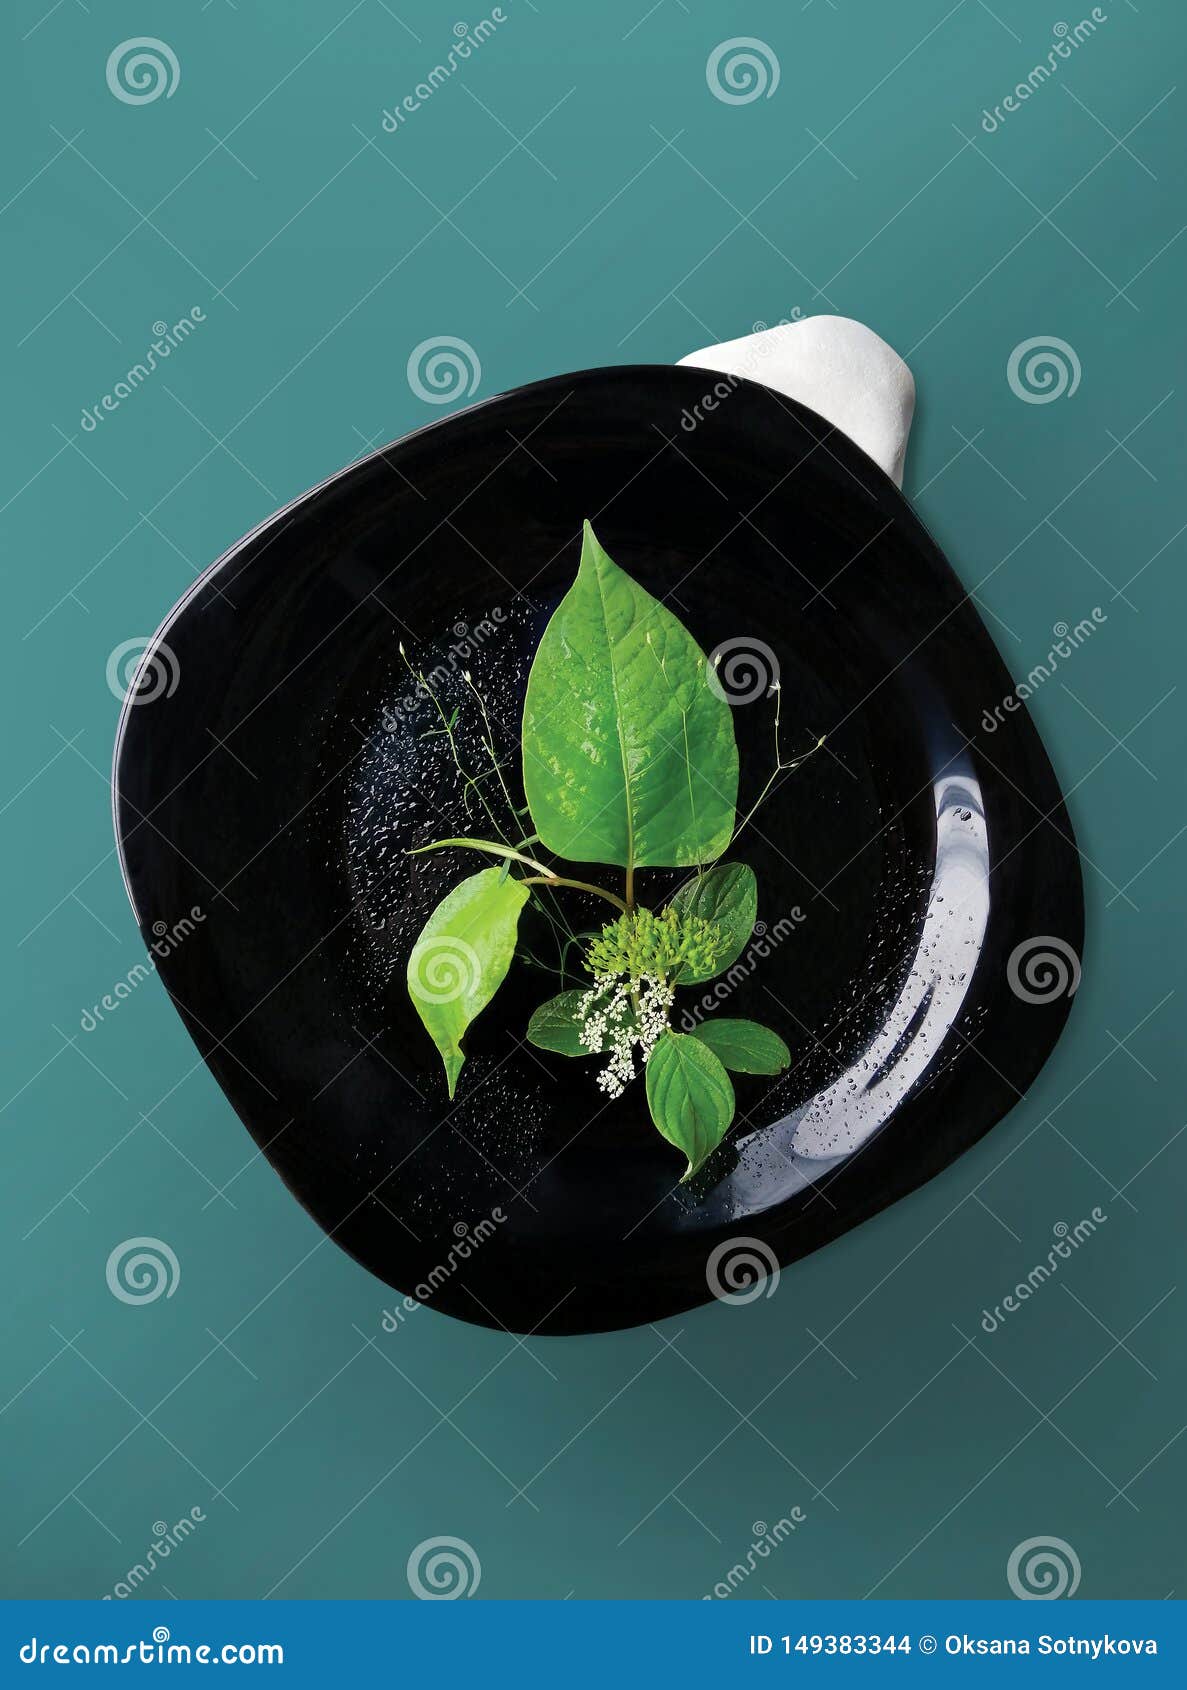 植物 叶子和花花束 在深刻的蓝色背景隔绝的一个黑色的盘子植物的构成库存照片 图片包括有植物的构成 植物 叶子和花花束 在深刻的蓝色背景隔绝的一个黑色的盘子